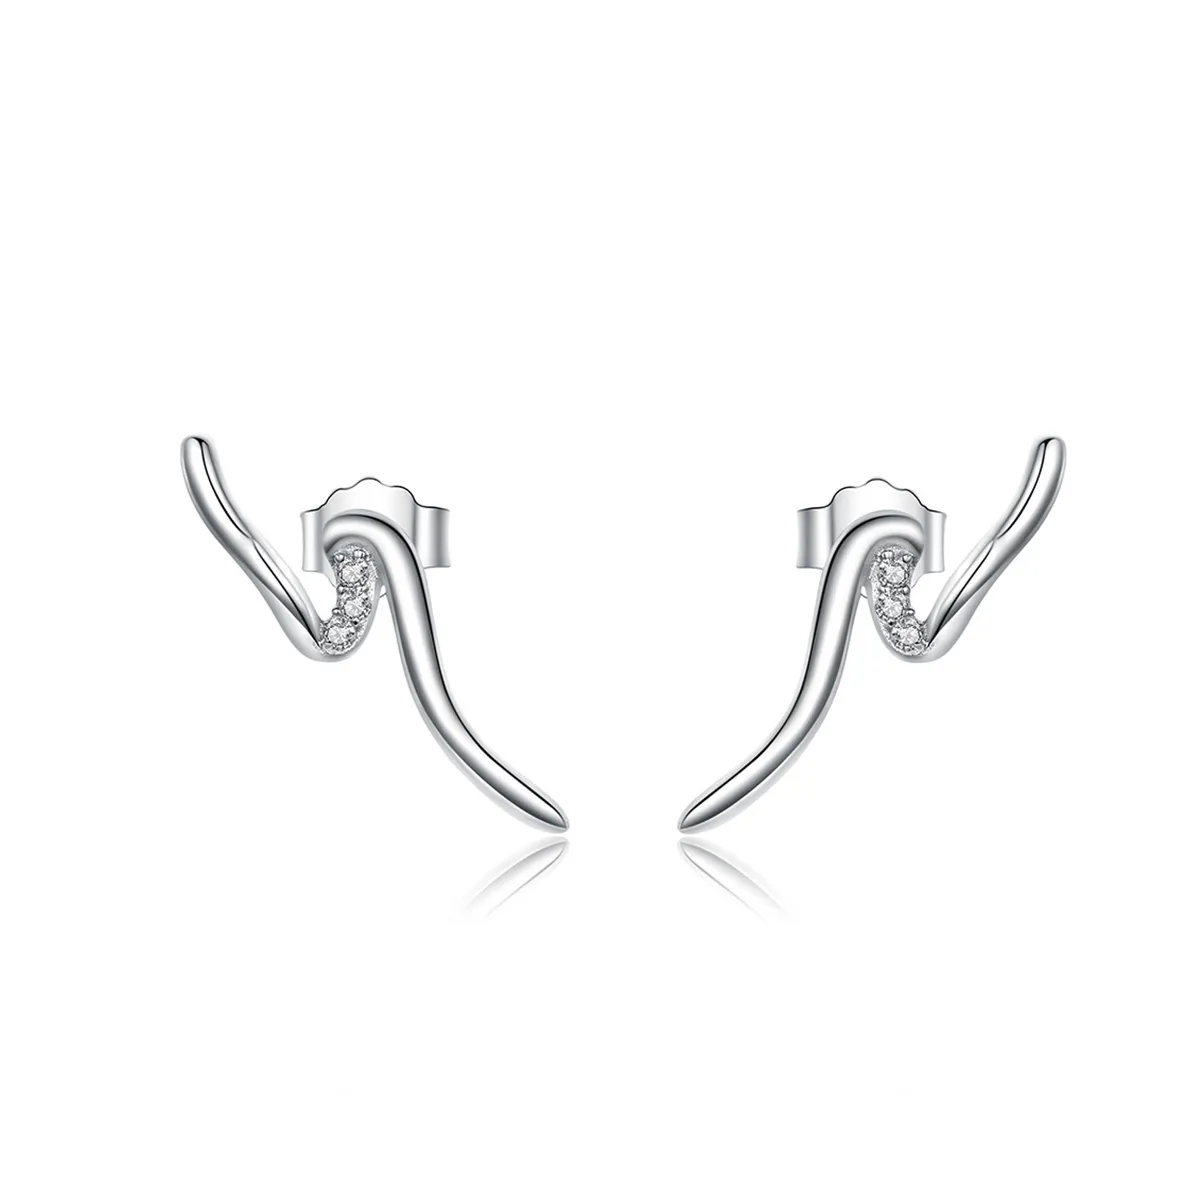 Pandora Style Silver Heartbeats Stud Earrings - SCE620